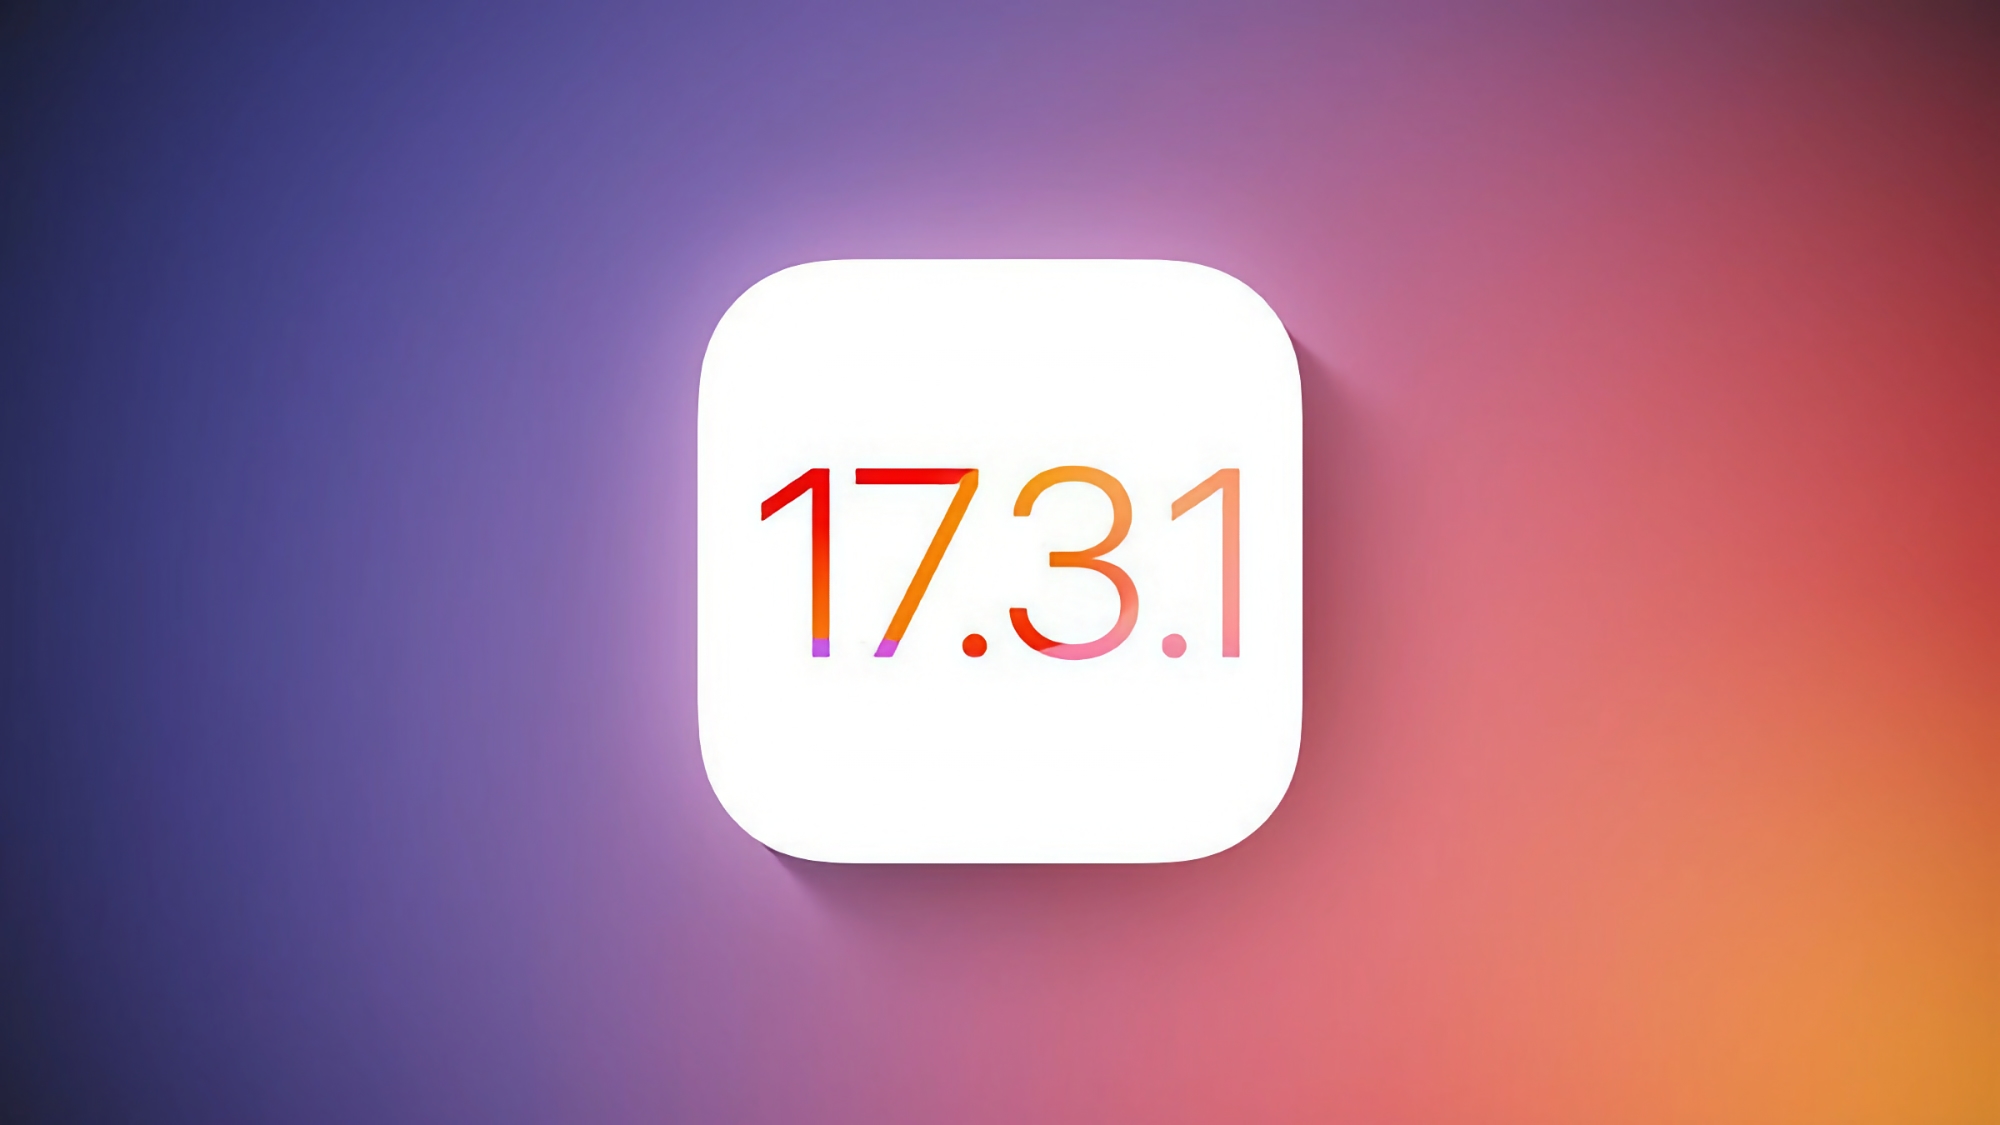 Apple ha rilasciato iOS 17.3.1 per gli utenti di iPhone: quali sono le novità?